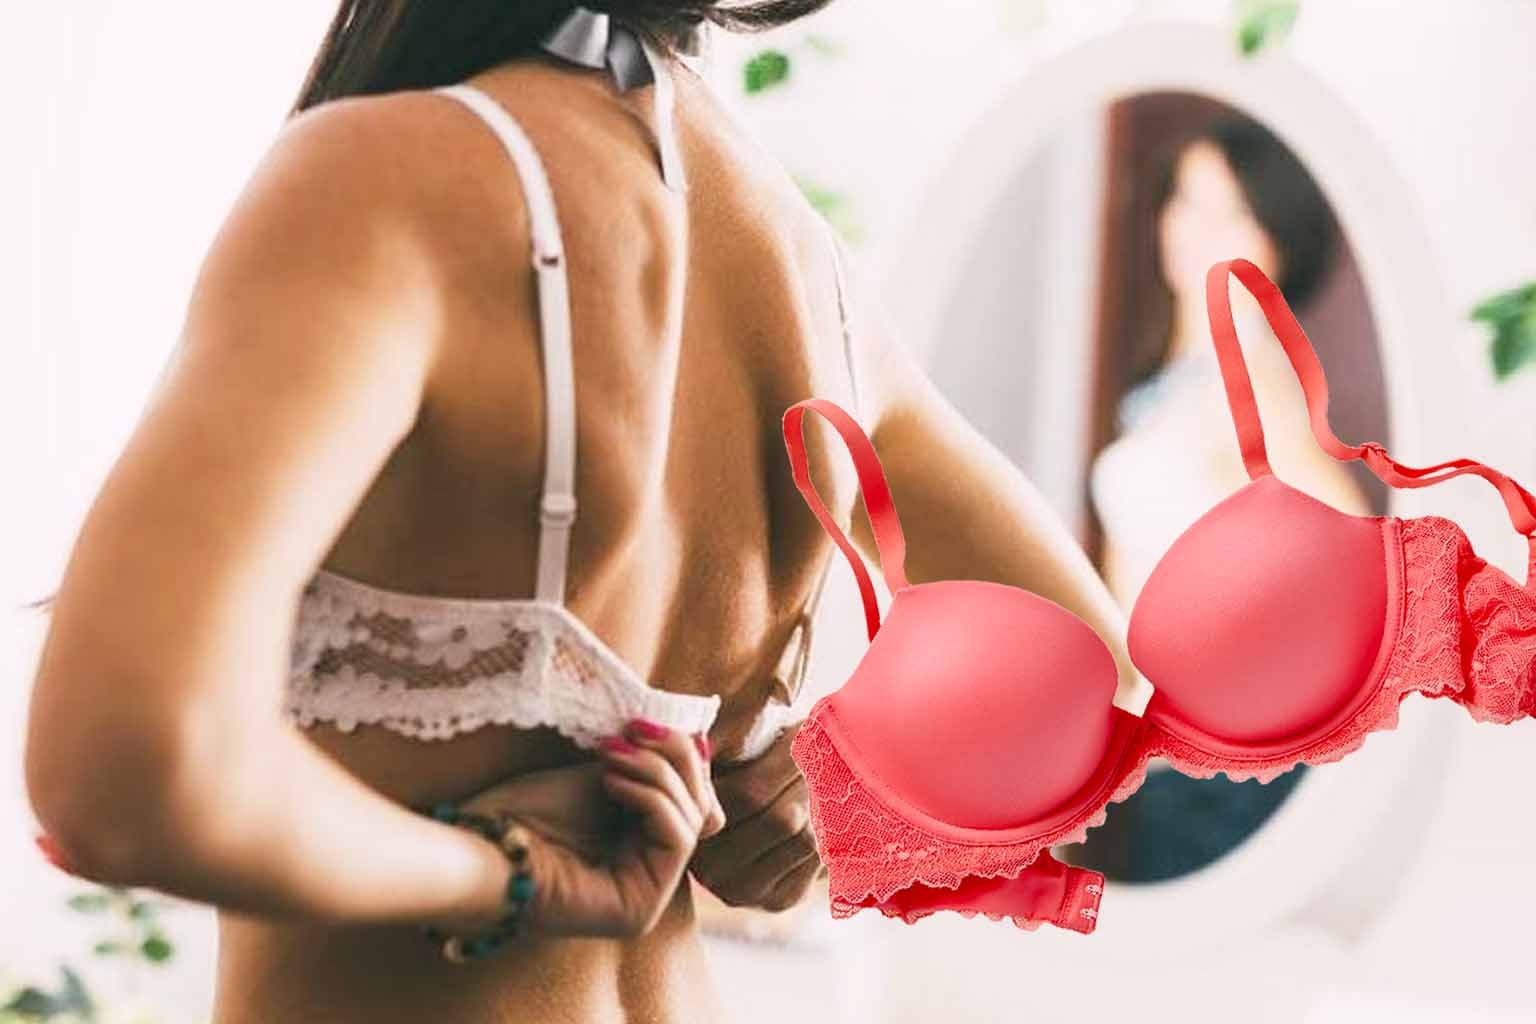 expert tips on bra